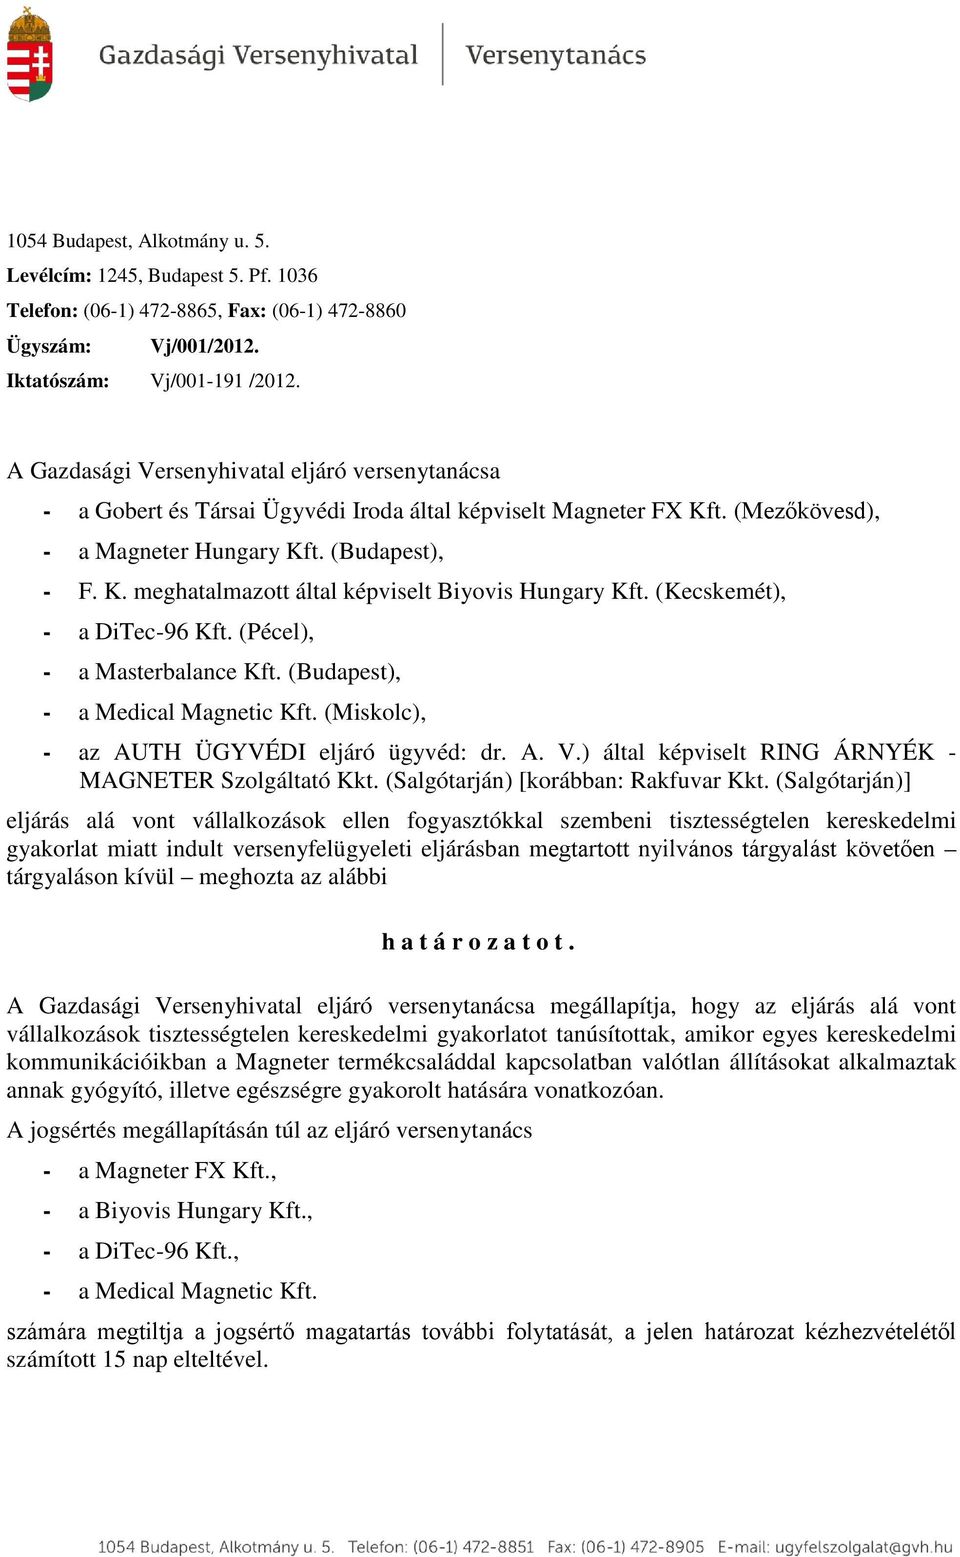 (Kecskemét), - a DiTec-96 Kft. (Pécel), - a (Budapest), - a Medical Magnetic Kft. (Miskolc), - az AUTH ÜGYVÉDI eljáró ügyvéd: dr. A. V.) által képviselt RING ÁRNYÉK - MAGNETER Szolgáltató Kkt.